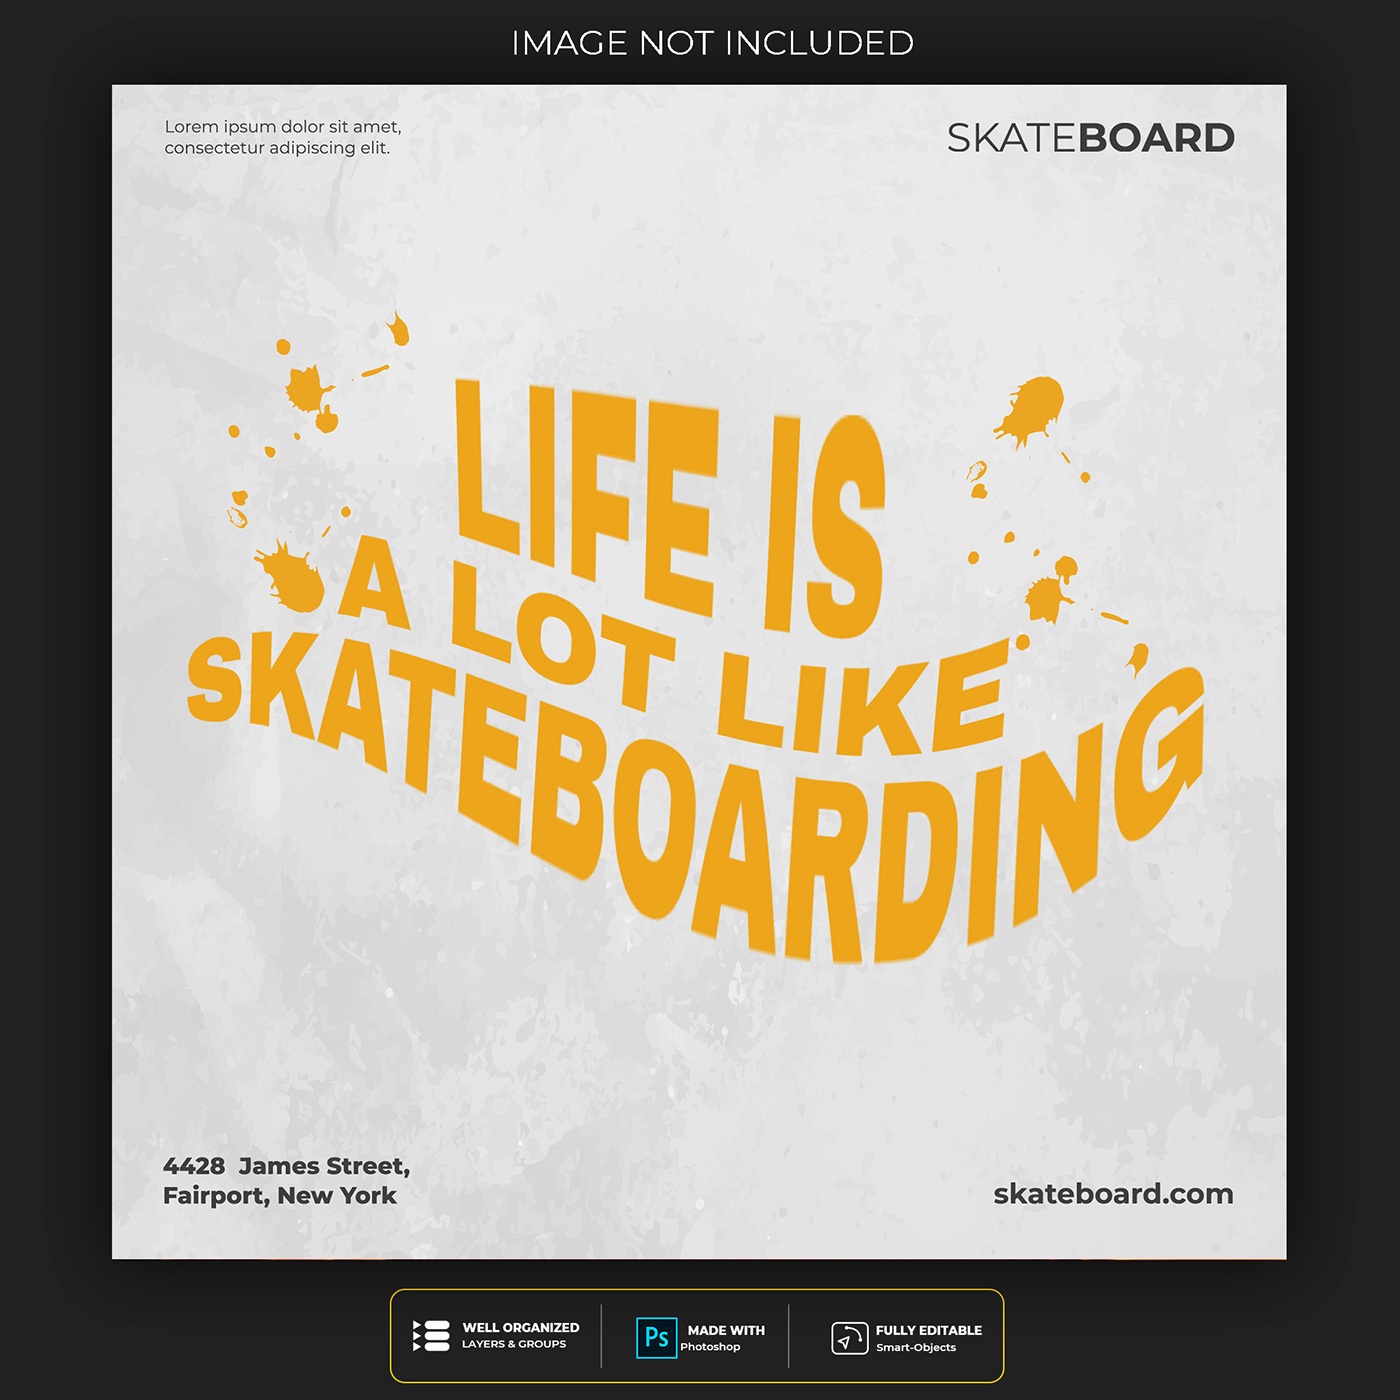 adobe illustrator download free psd freebies Longboards skateboard branding SKATEBOARD DESIGN skateboarding design Skateboarding Magazine skateboards